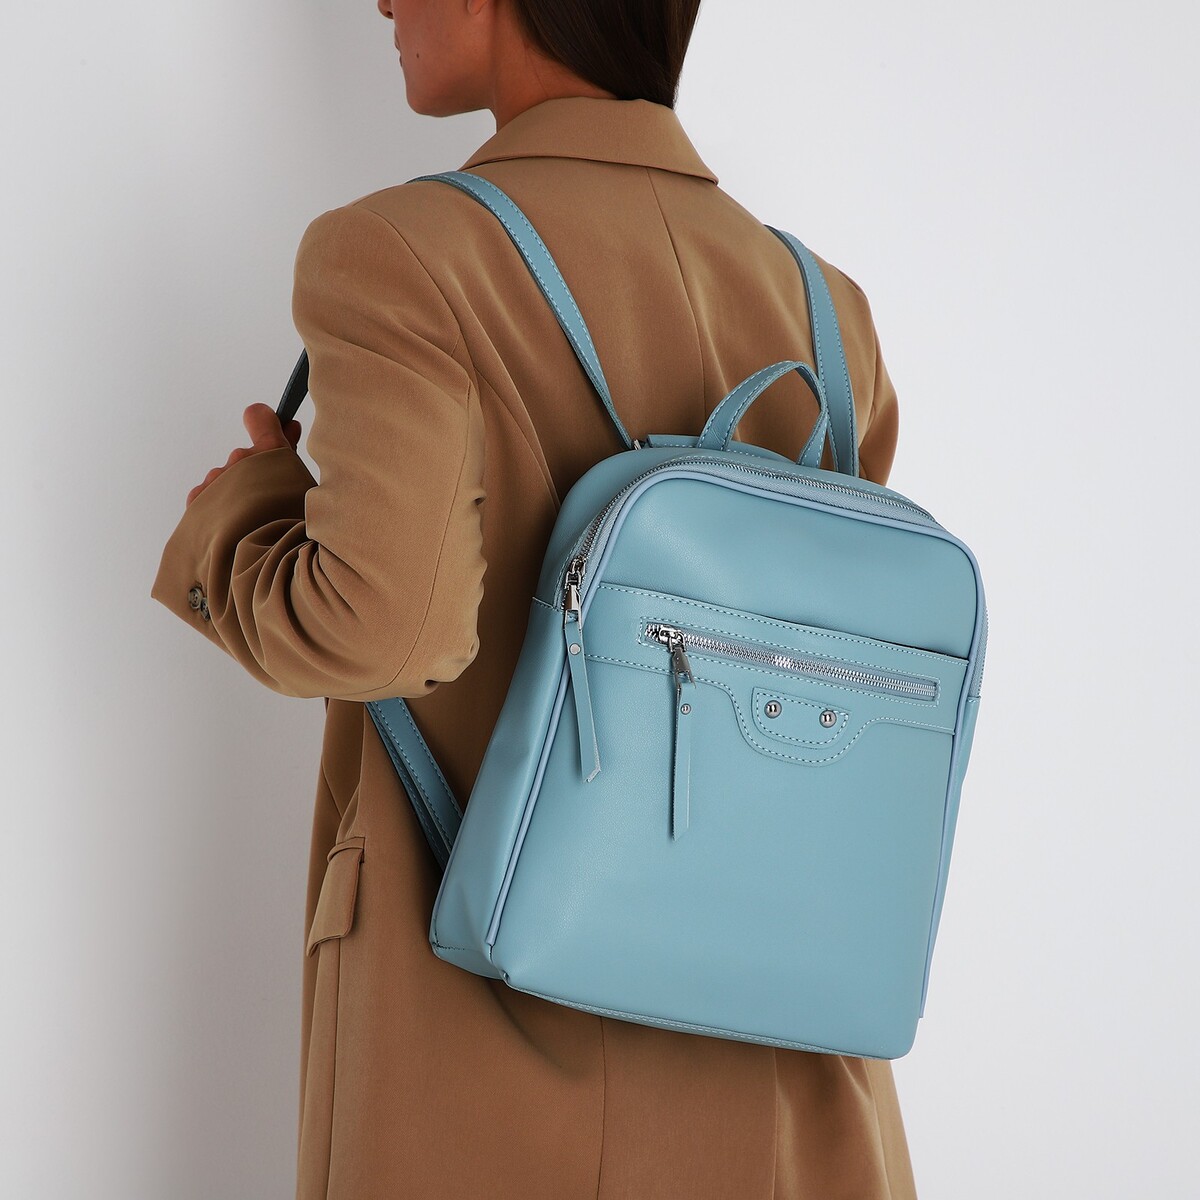 Рюкзак женский из искусственной кожи на молнии, 3 кармана, цвет голубой рюкзак молодежный из искусственной кожи на молнии 4 кармана бежевый